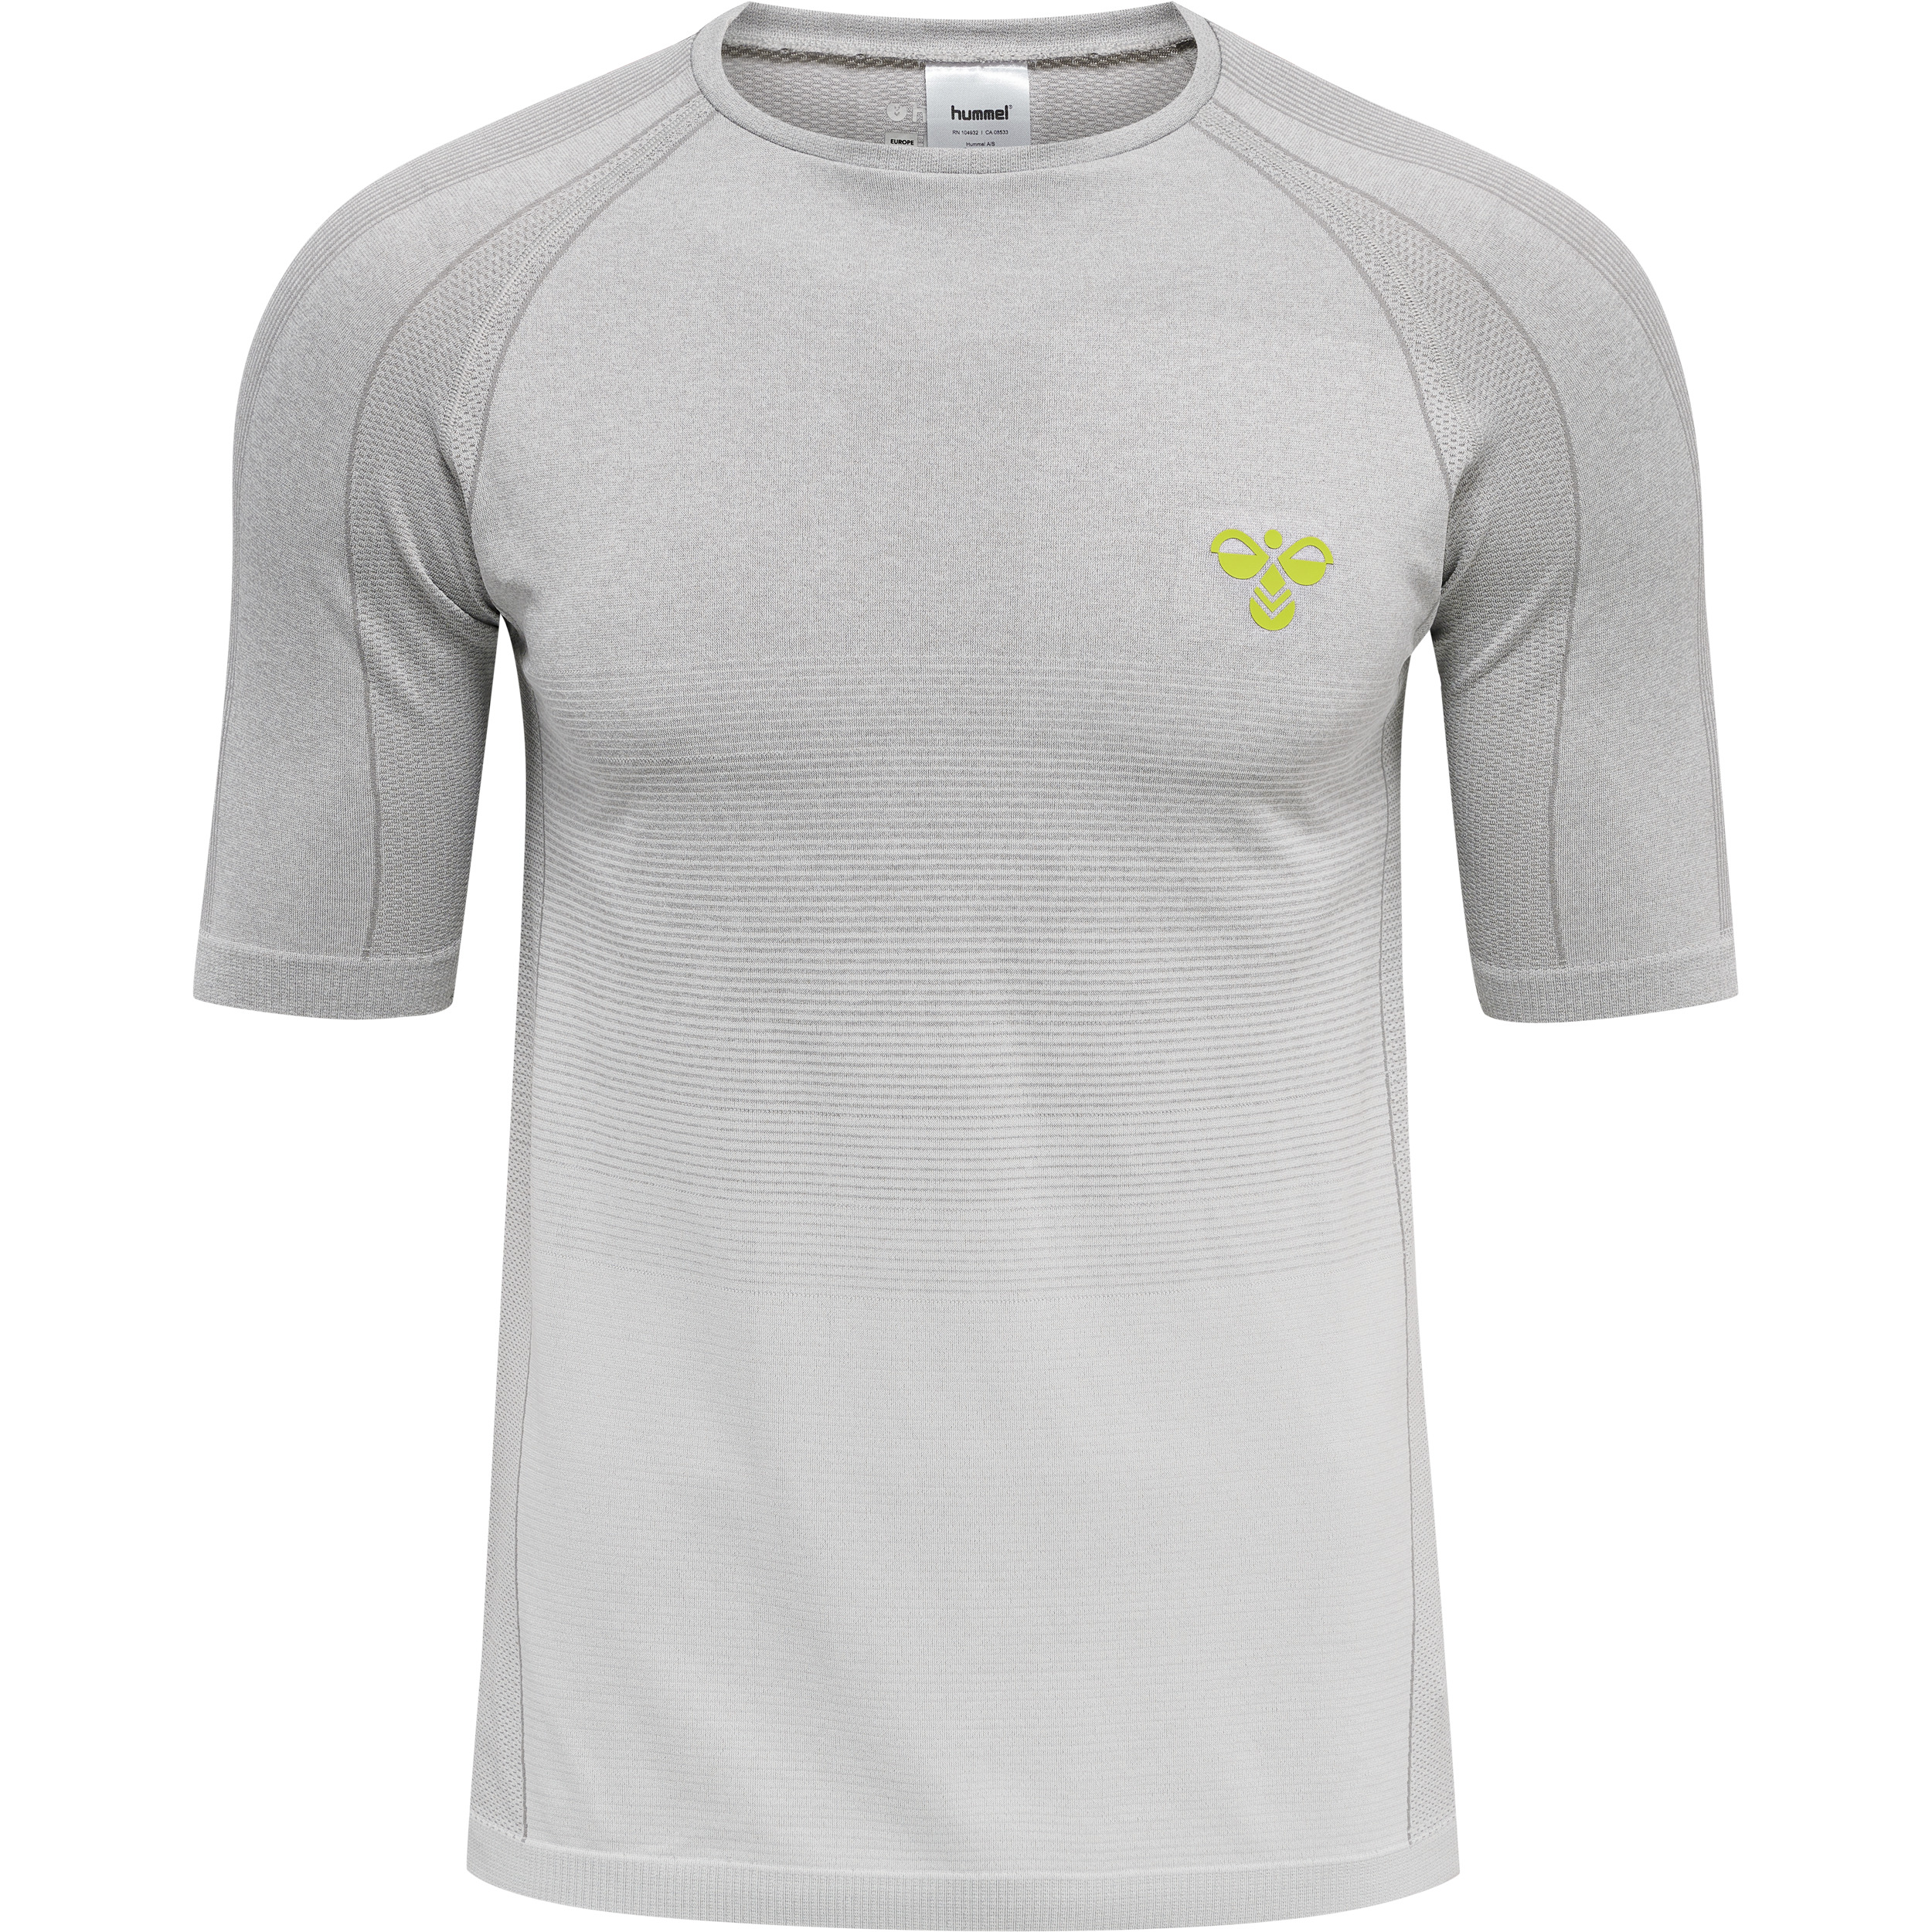 Hummel GG12 Training Seamless Herren T-Shirt